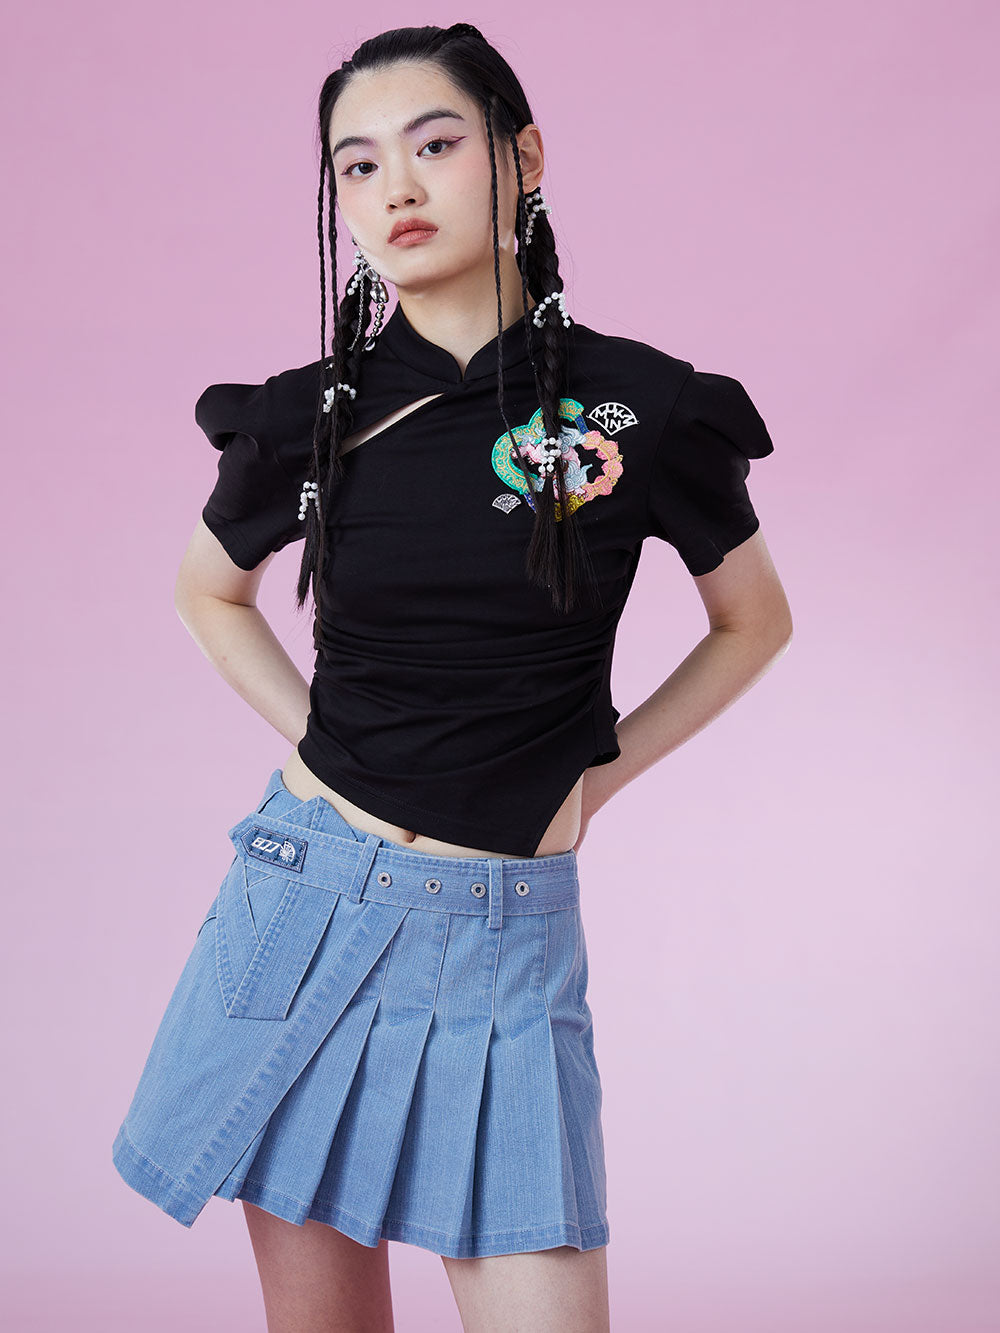 MUKZIN New Chinese Style Slim Original Eye-appeal T-shirts